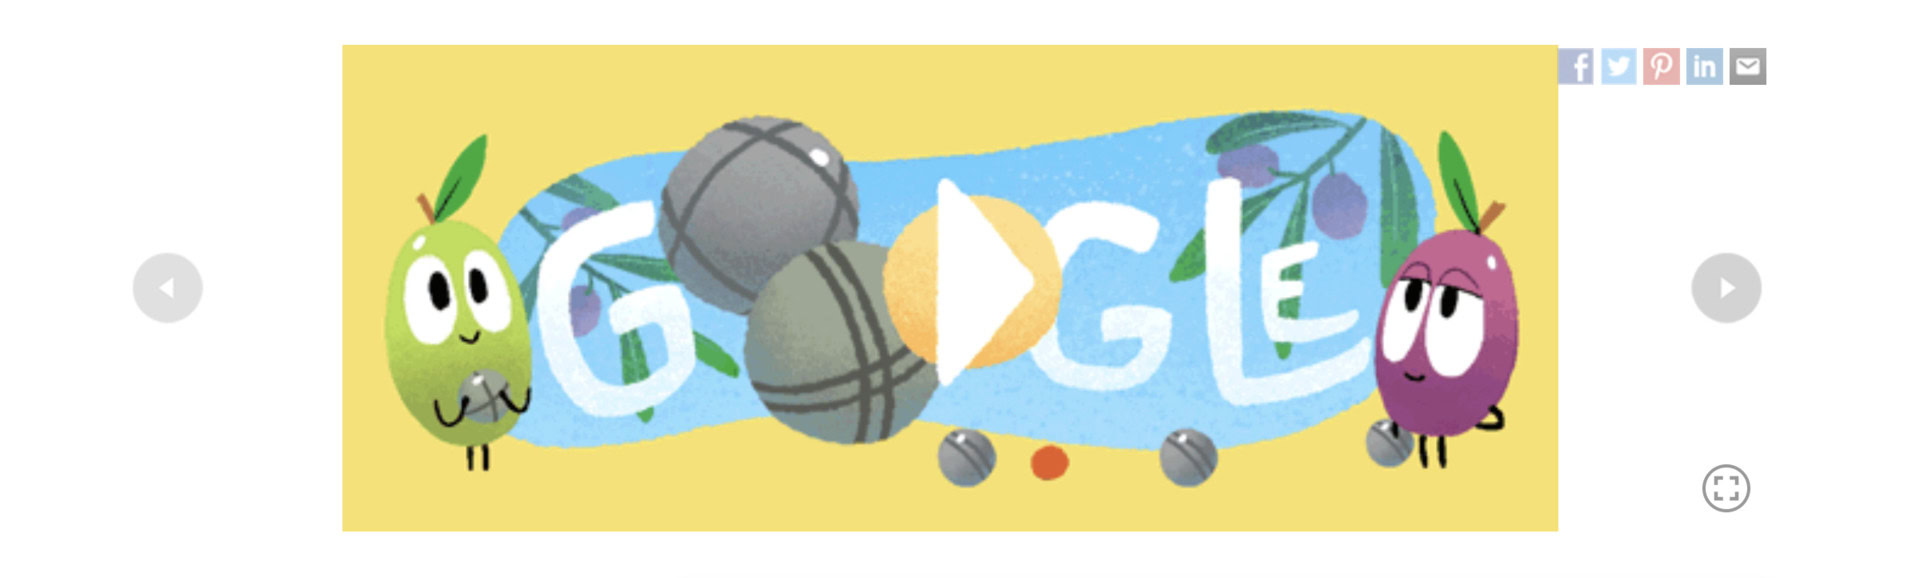 google doodle petanque